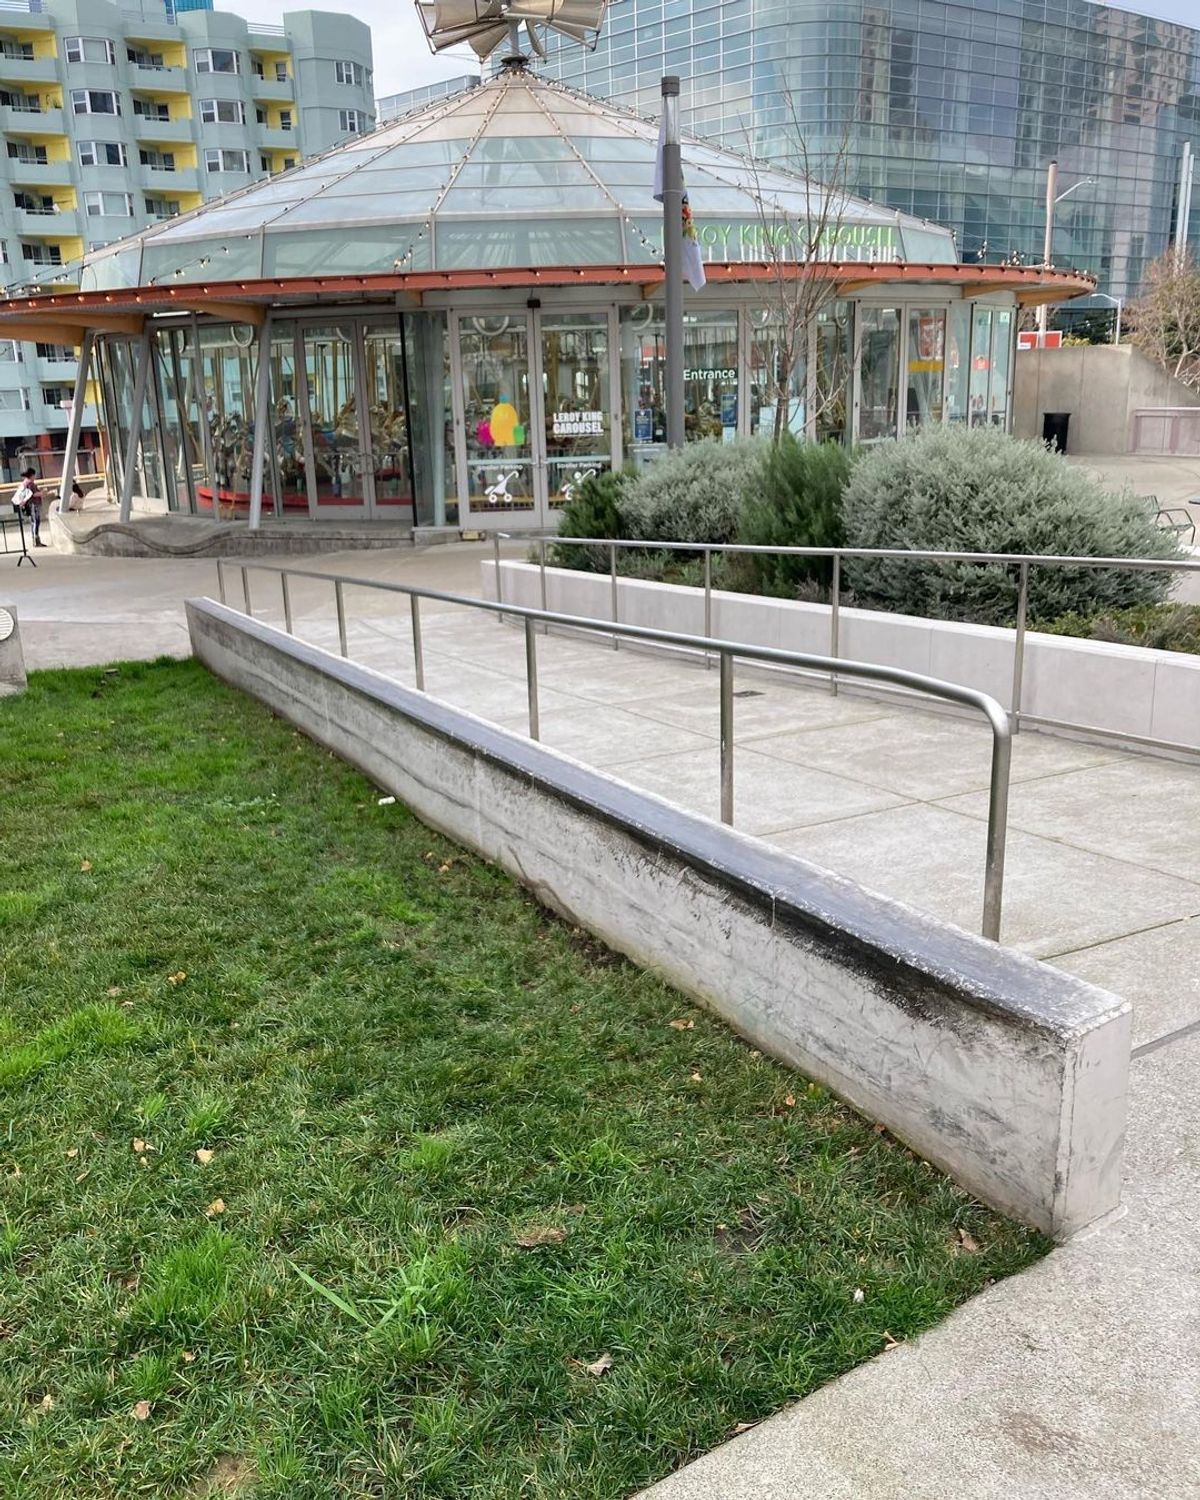 Image for skate spot Children's Creativity Museum - Long Ledge Over Grass